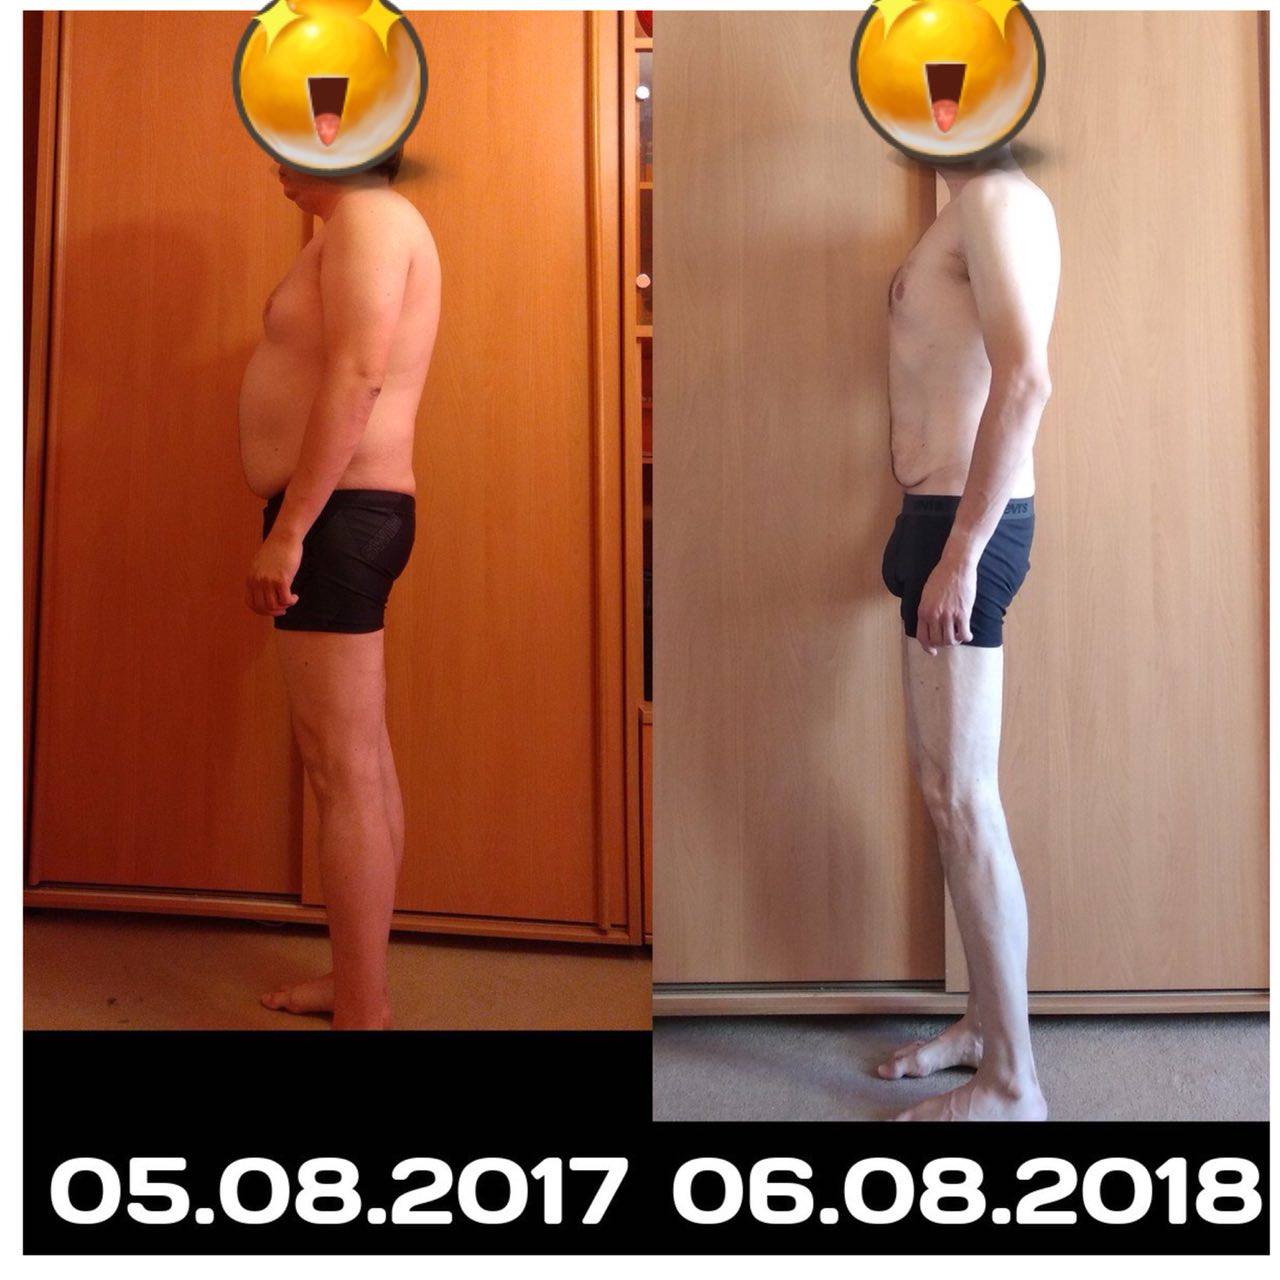 результаты похудения до и после фото мужчины